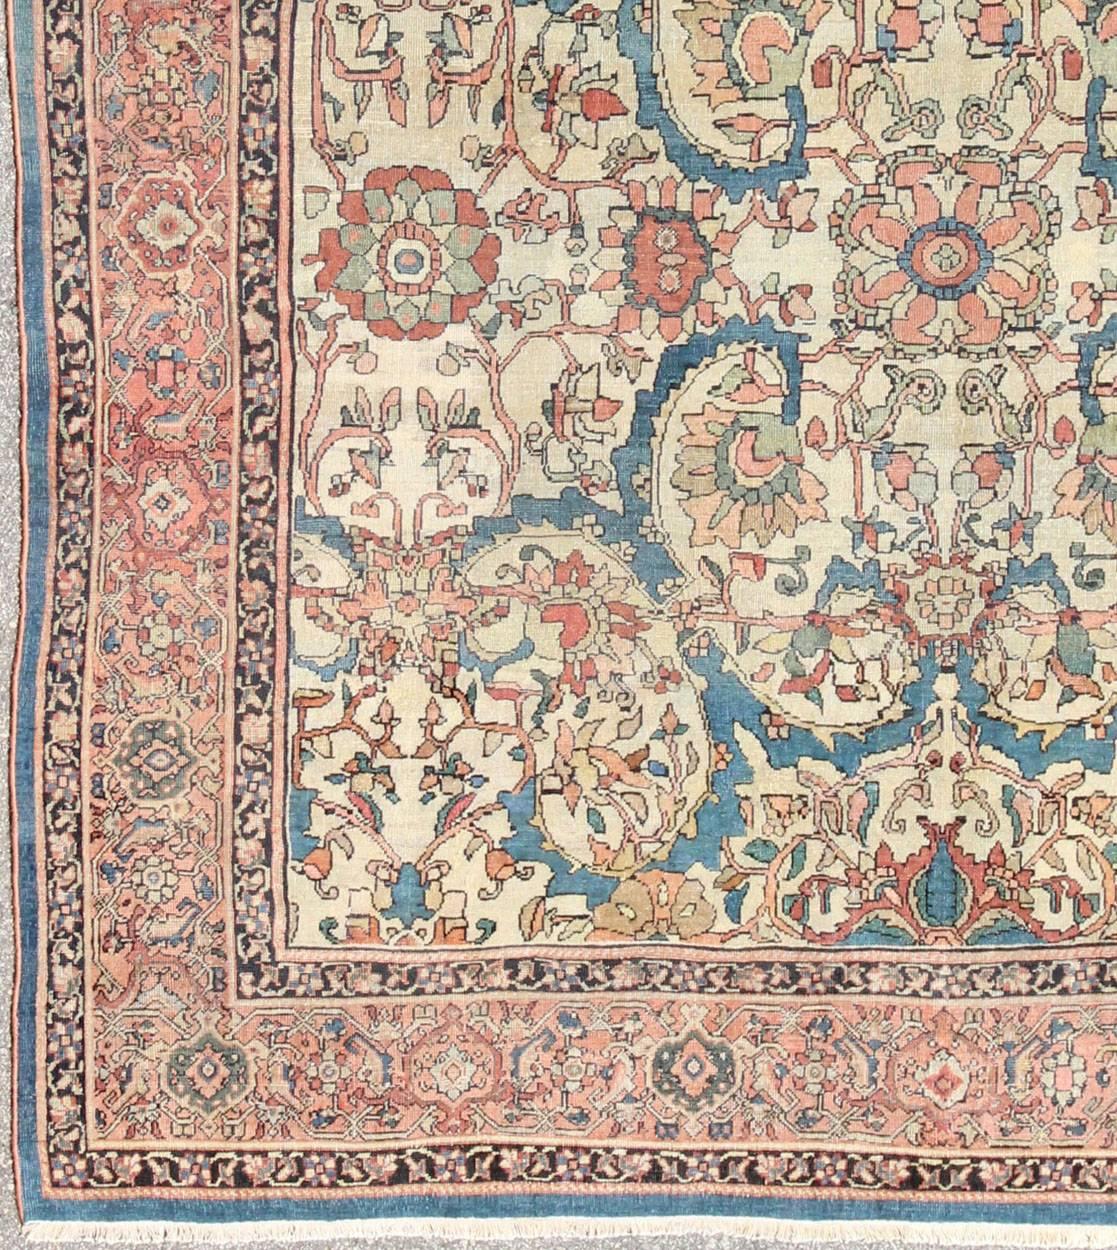 Tapis persan antique Sultanabad en fond ivoire, bleu, saumon et couleurs multiples.
Cet ancien tapis Sultanabad présente un motif à grande échelle composé de palmettes et de fleurs stylisées. Cette superbe pièce se caractérise par une combinaison de